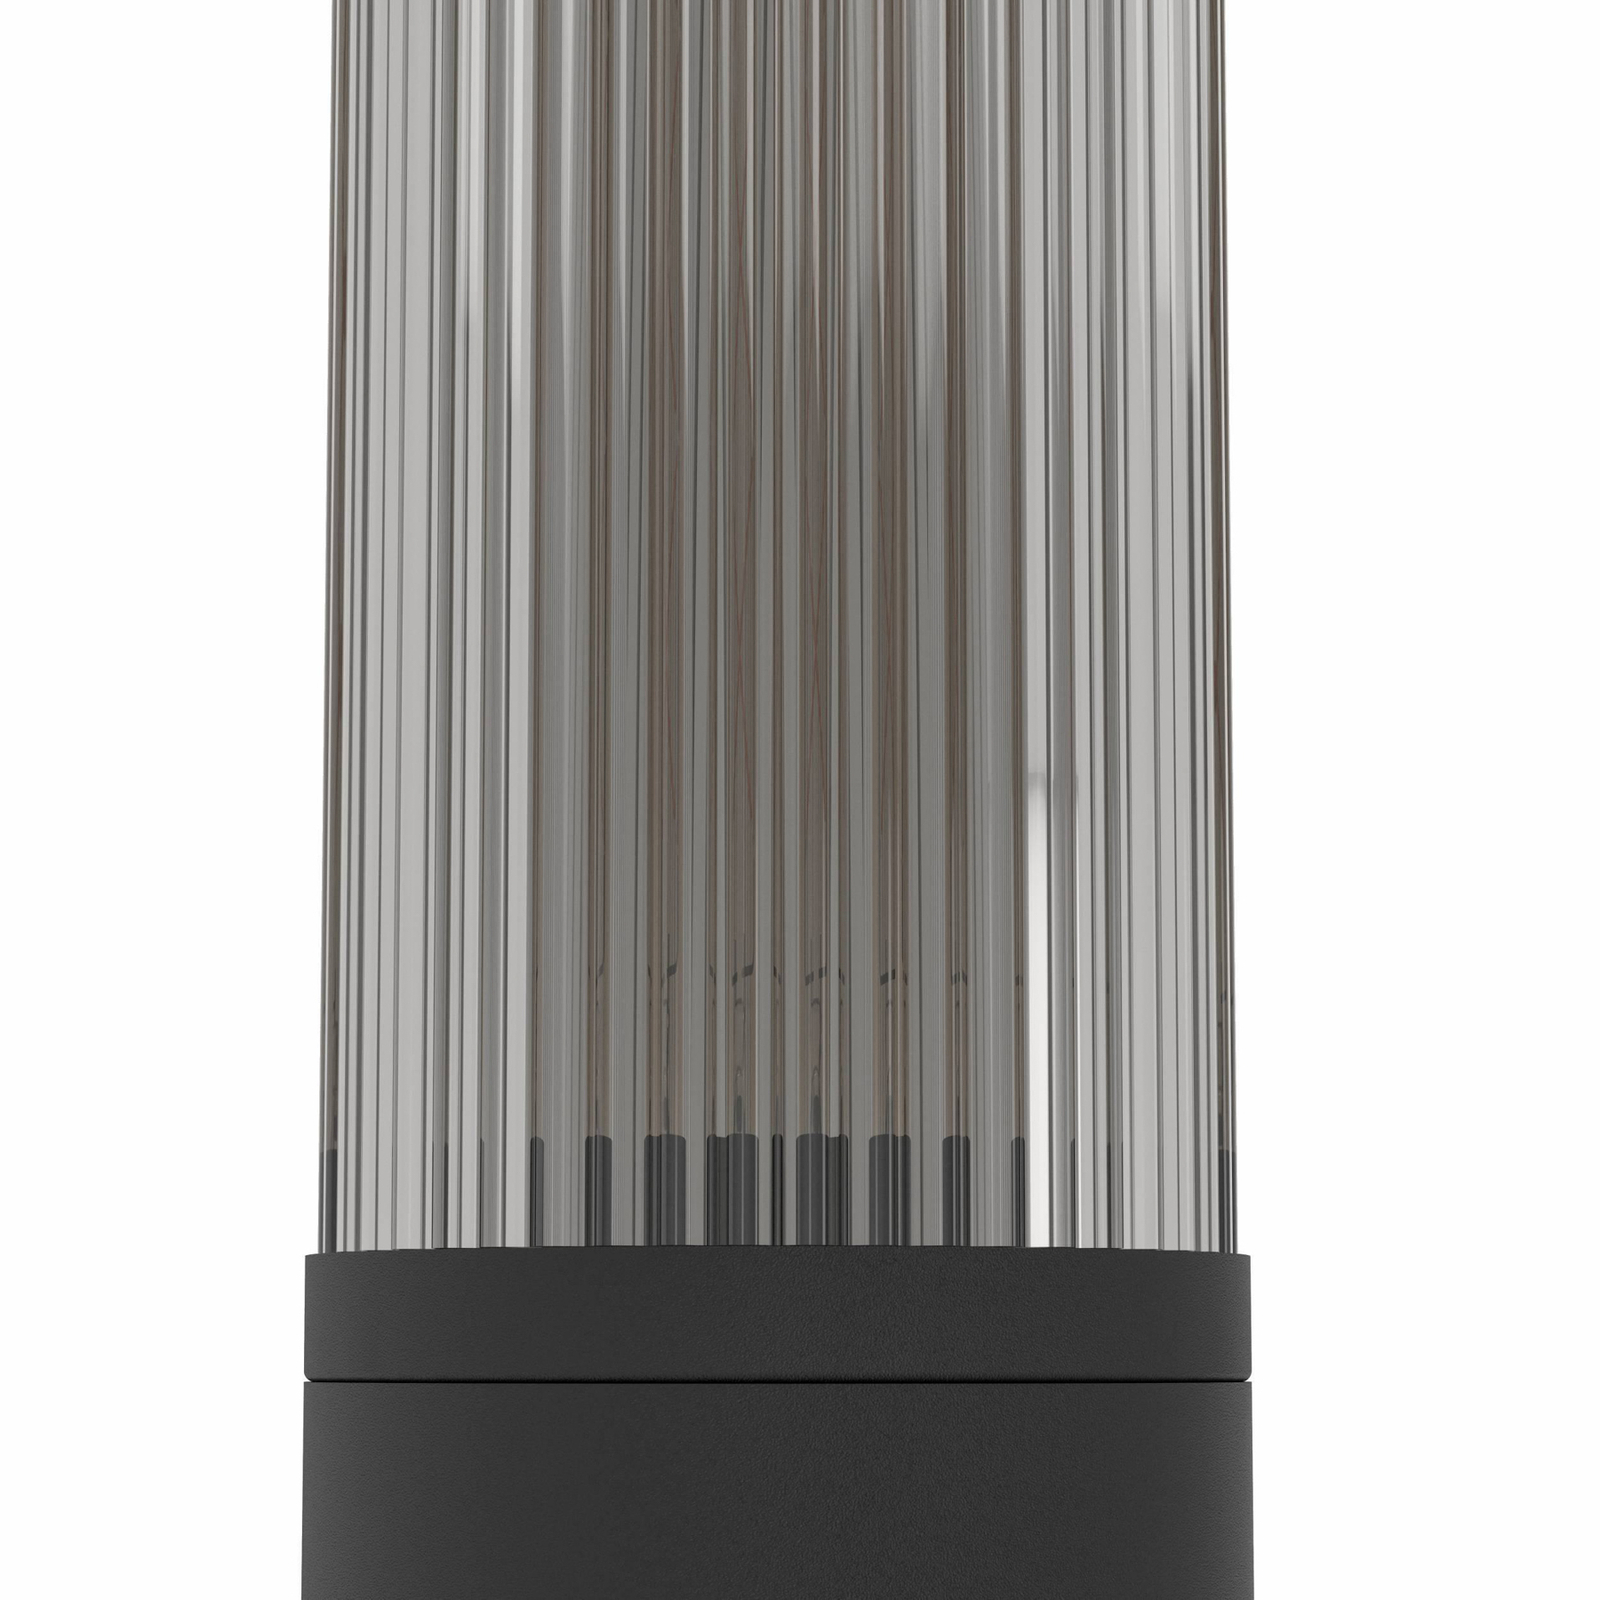 Salle veilampe, høyde 110 cm, svart, aluminium